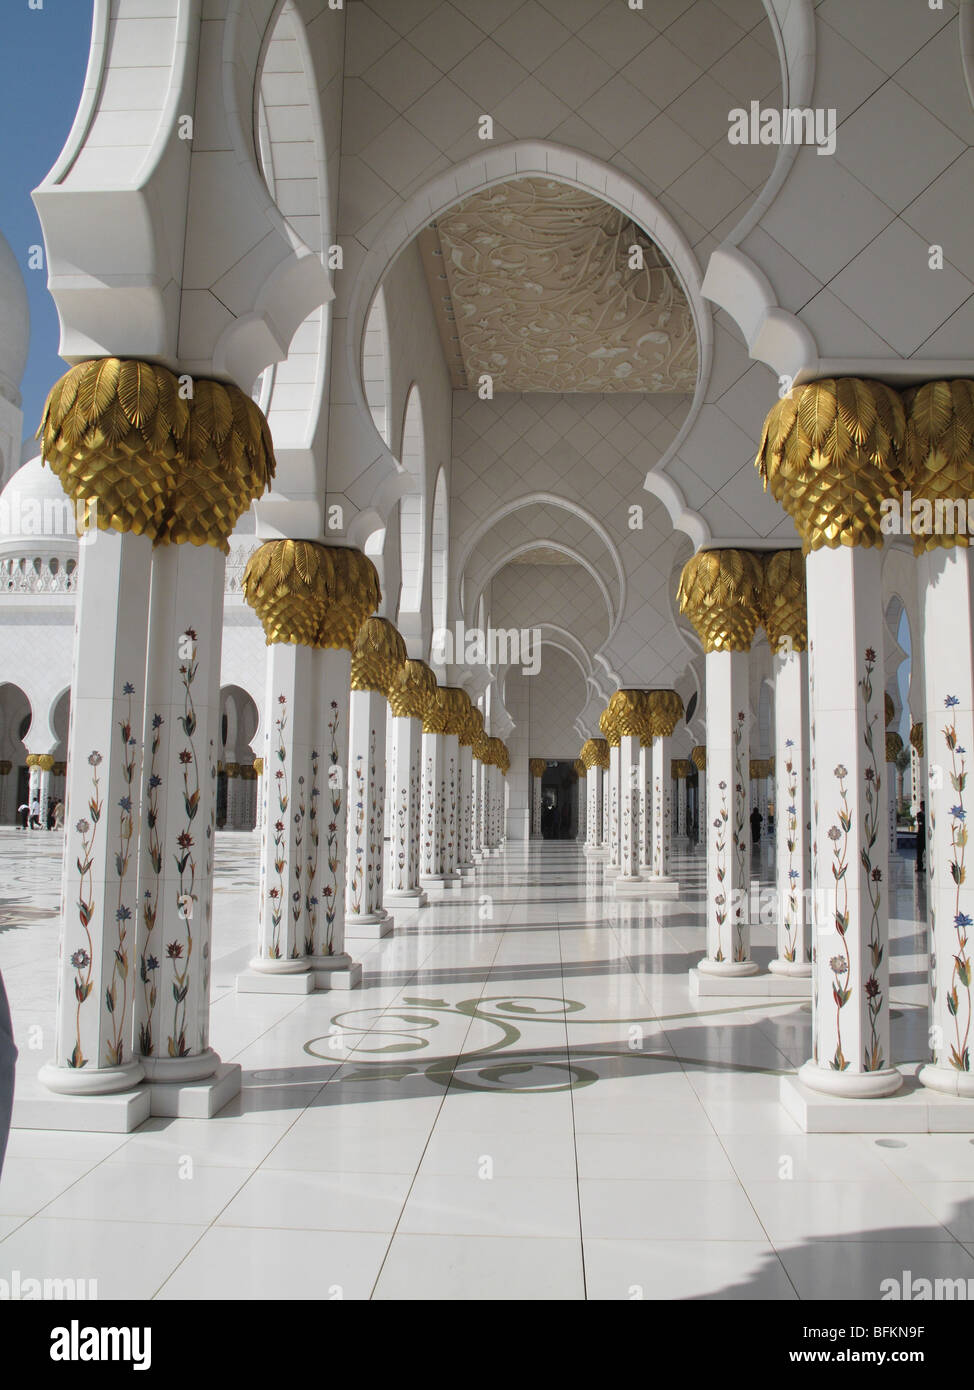 Colonne ed archi passerella & marmo bianco al Sheikh Zayed Bin Sultan Al Nahyan, la Moschea di Abu Dhabi Foto Stock